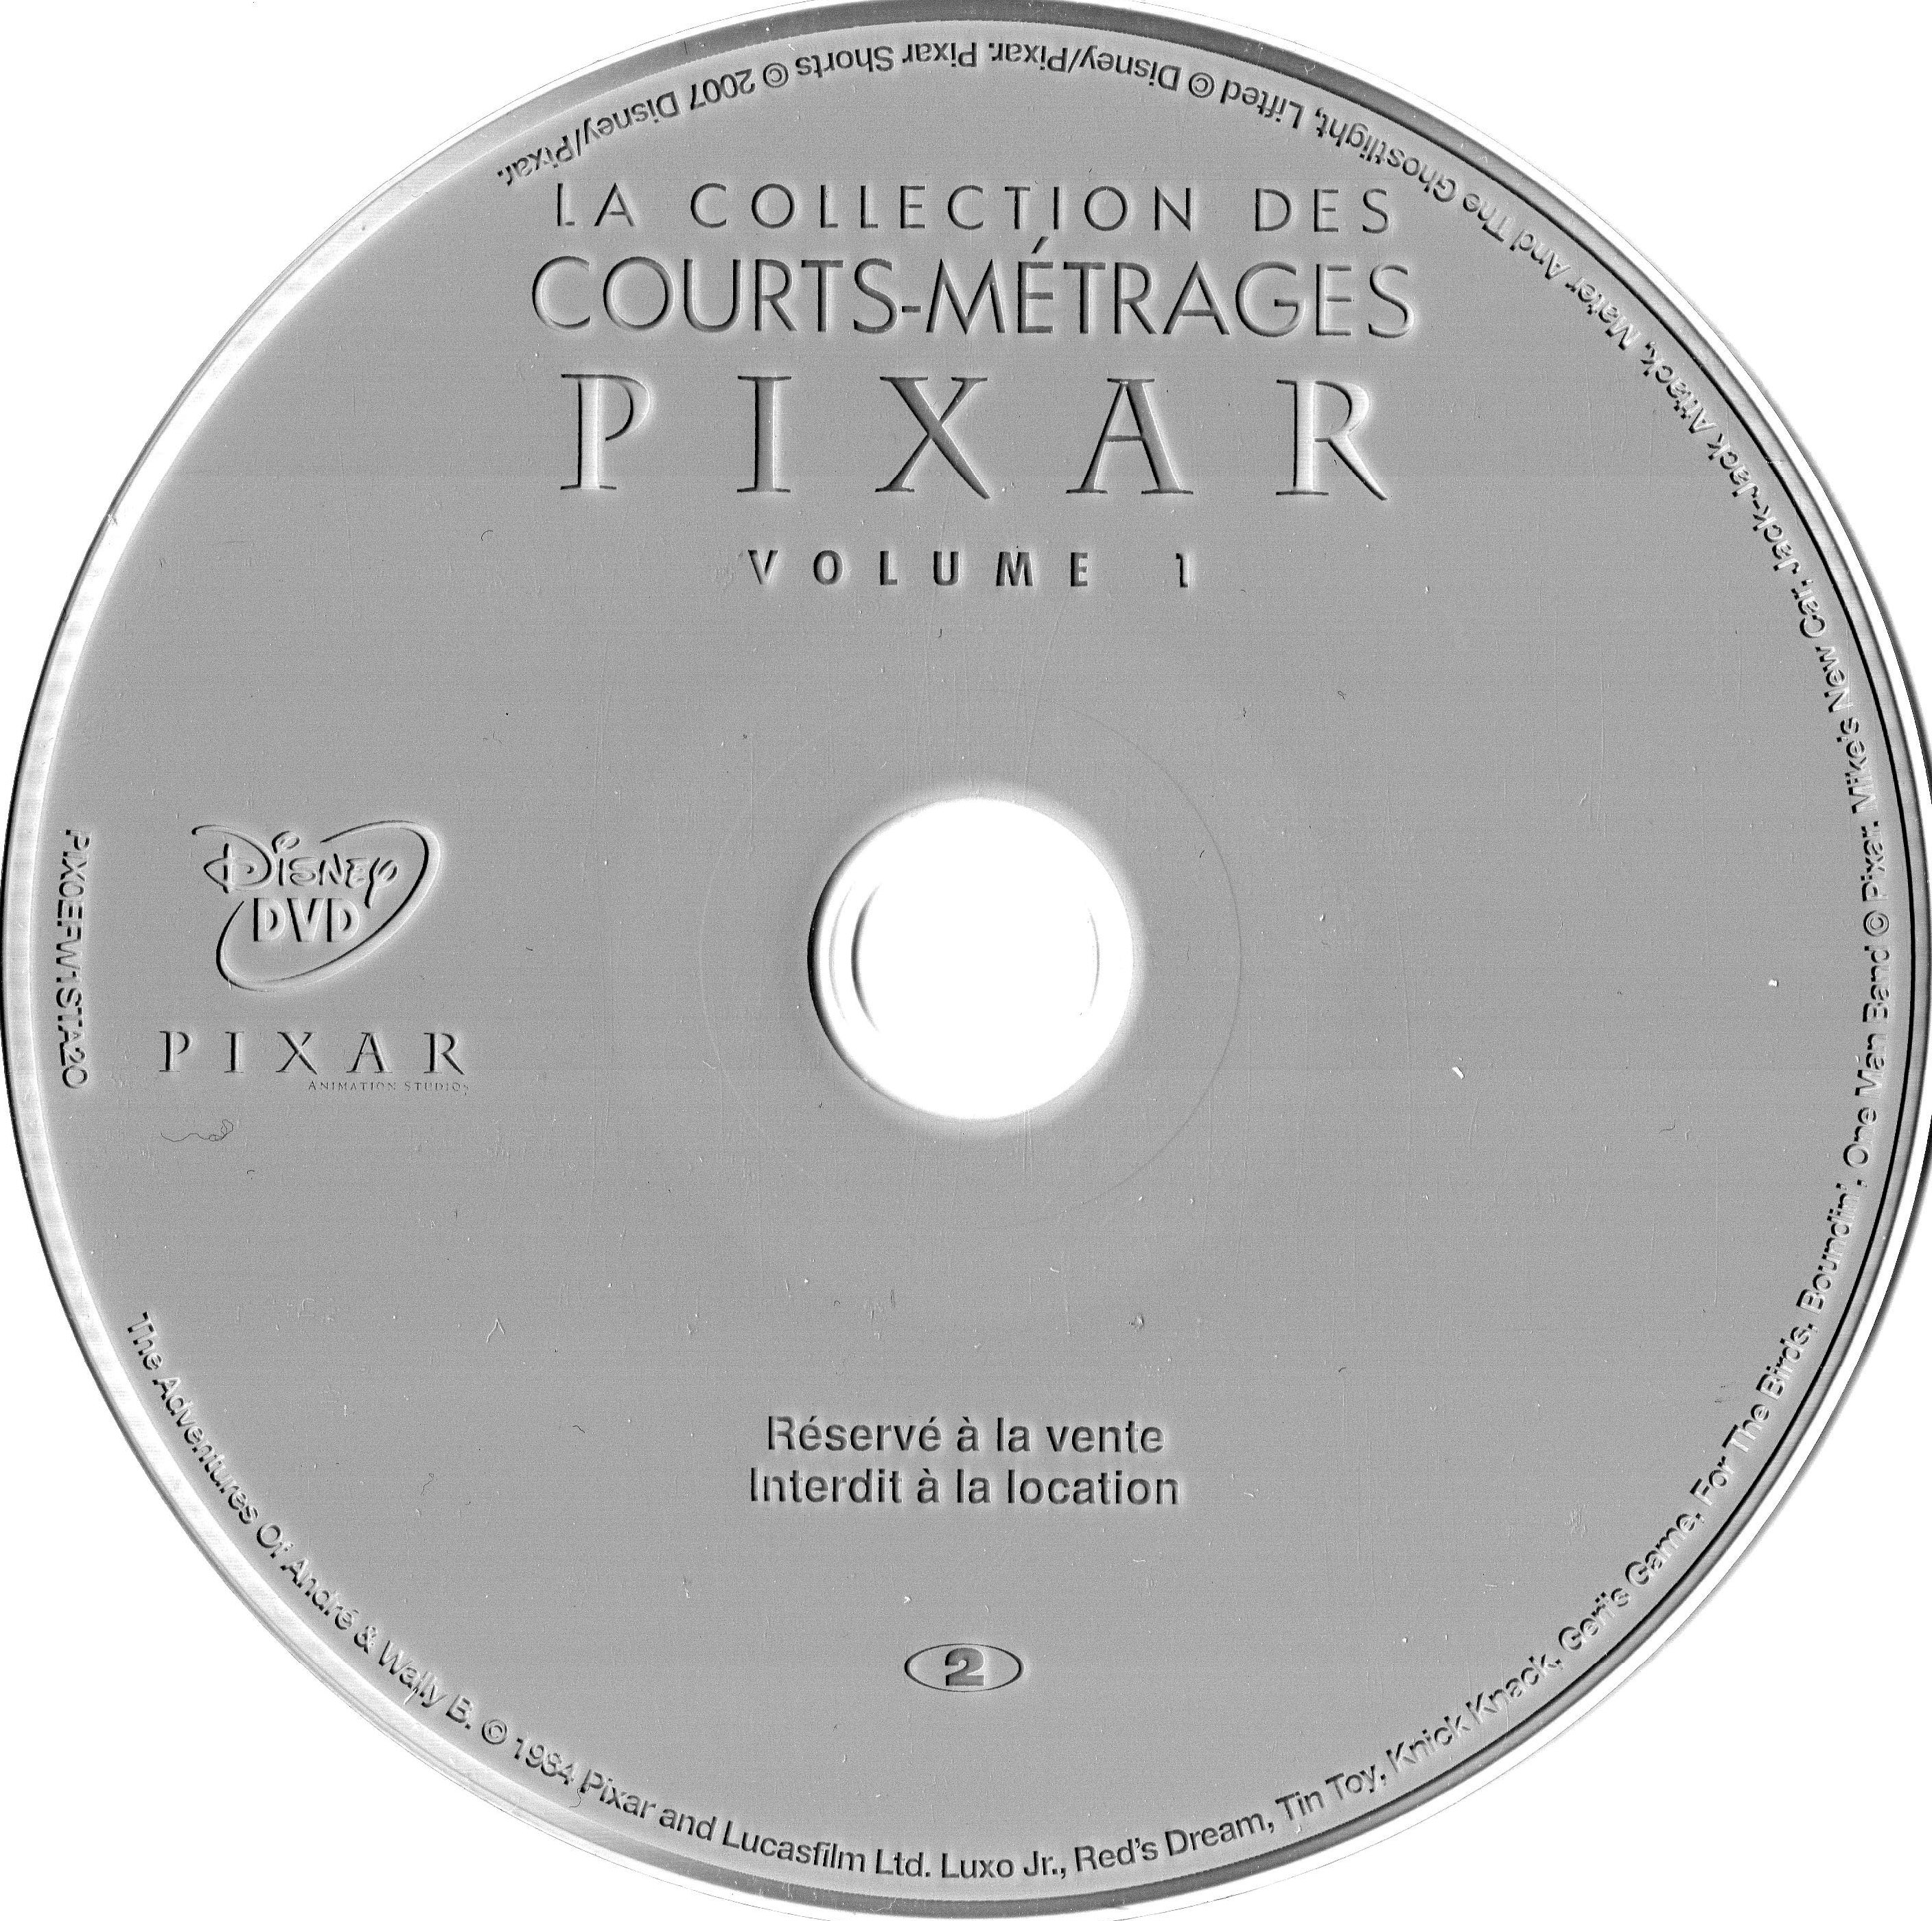 La collection des courts mtrages Pixar vol 01